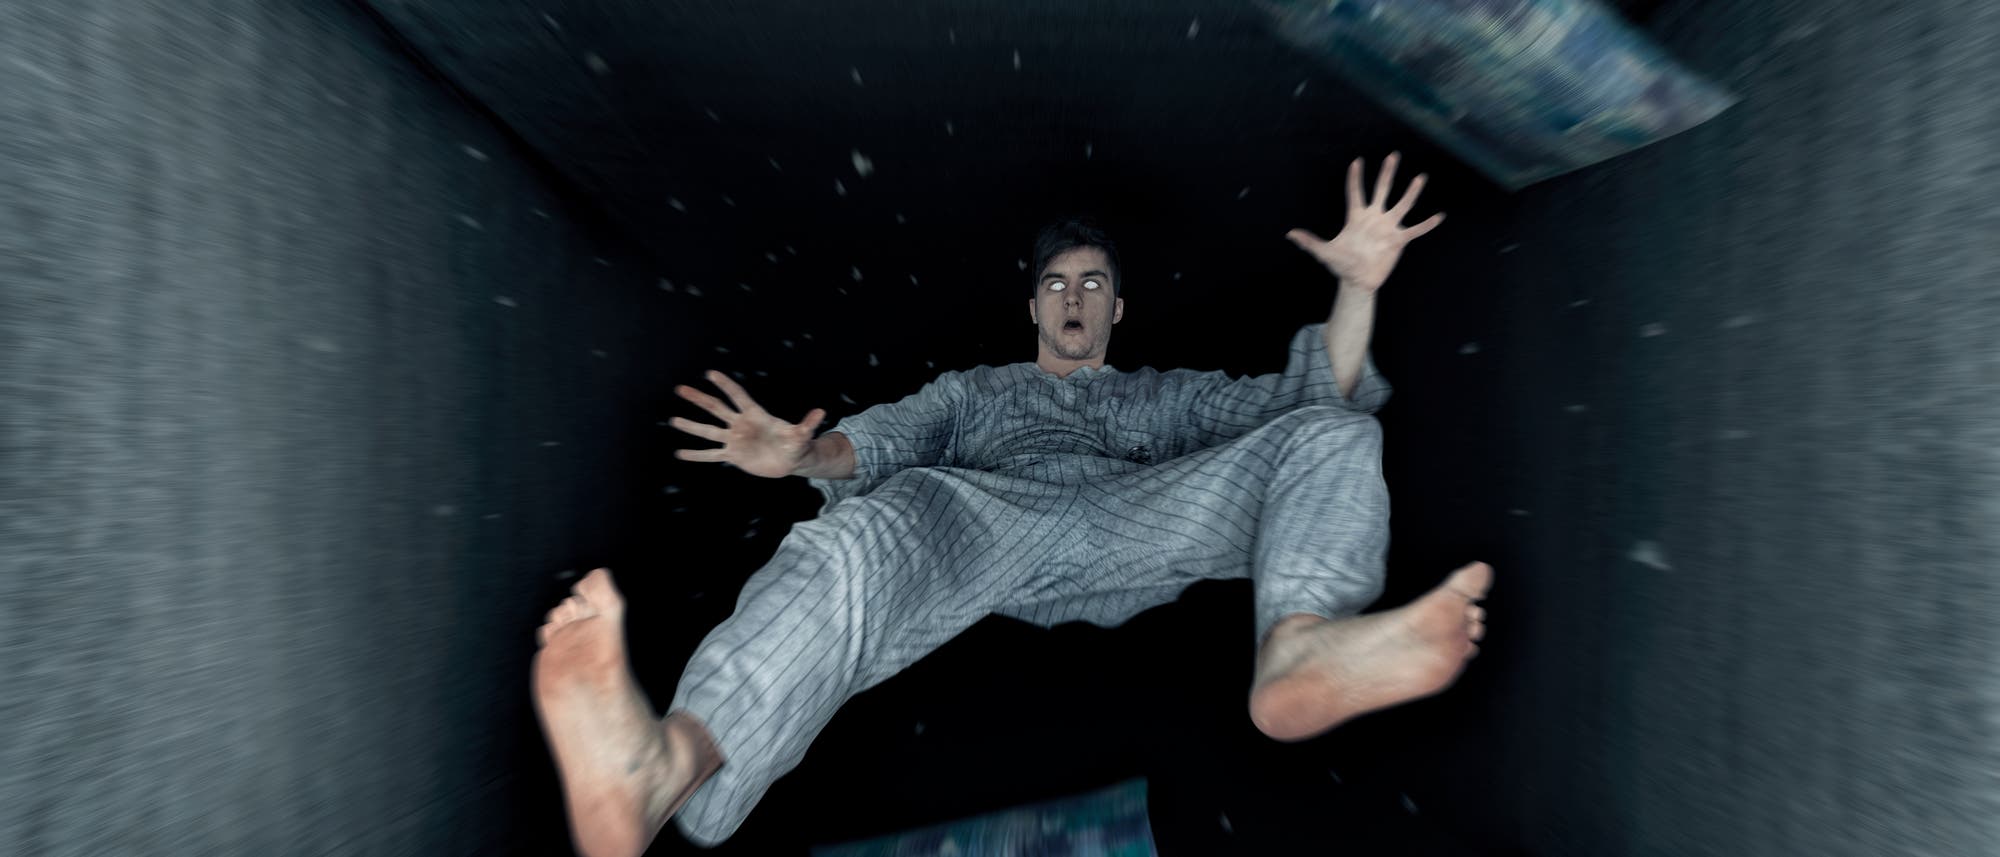 Ein Mann im Pyjama fällt mit Decke und Kissen in einen schwarzen Schacht.